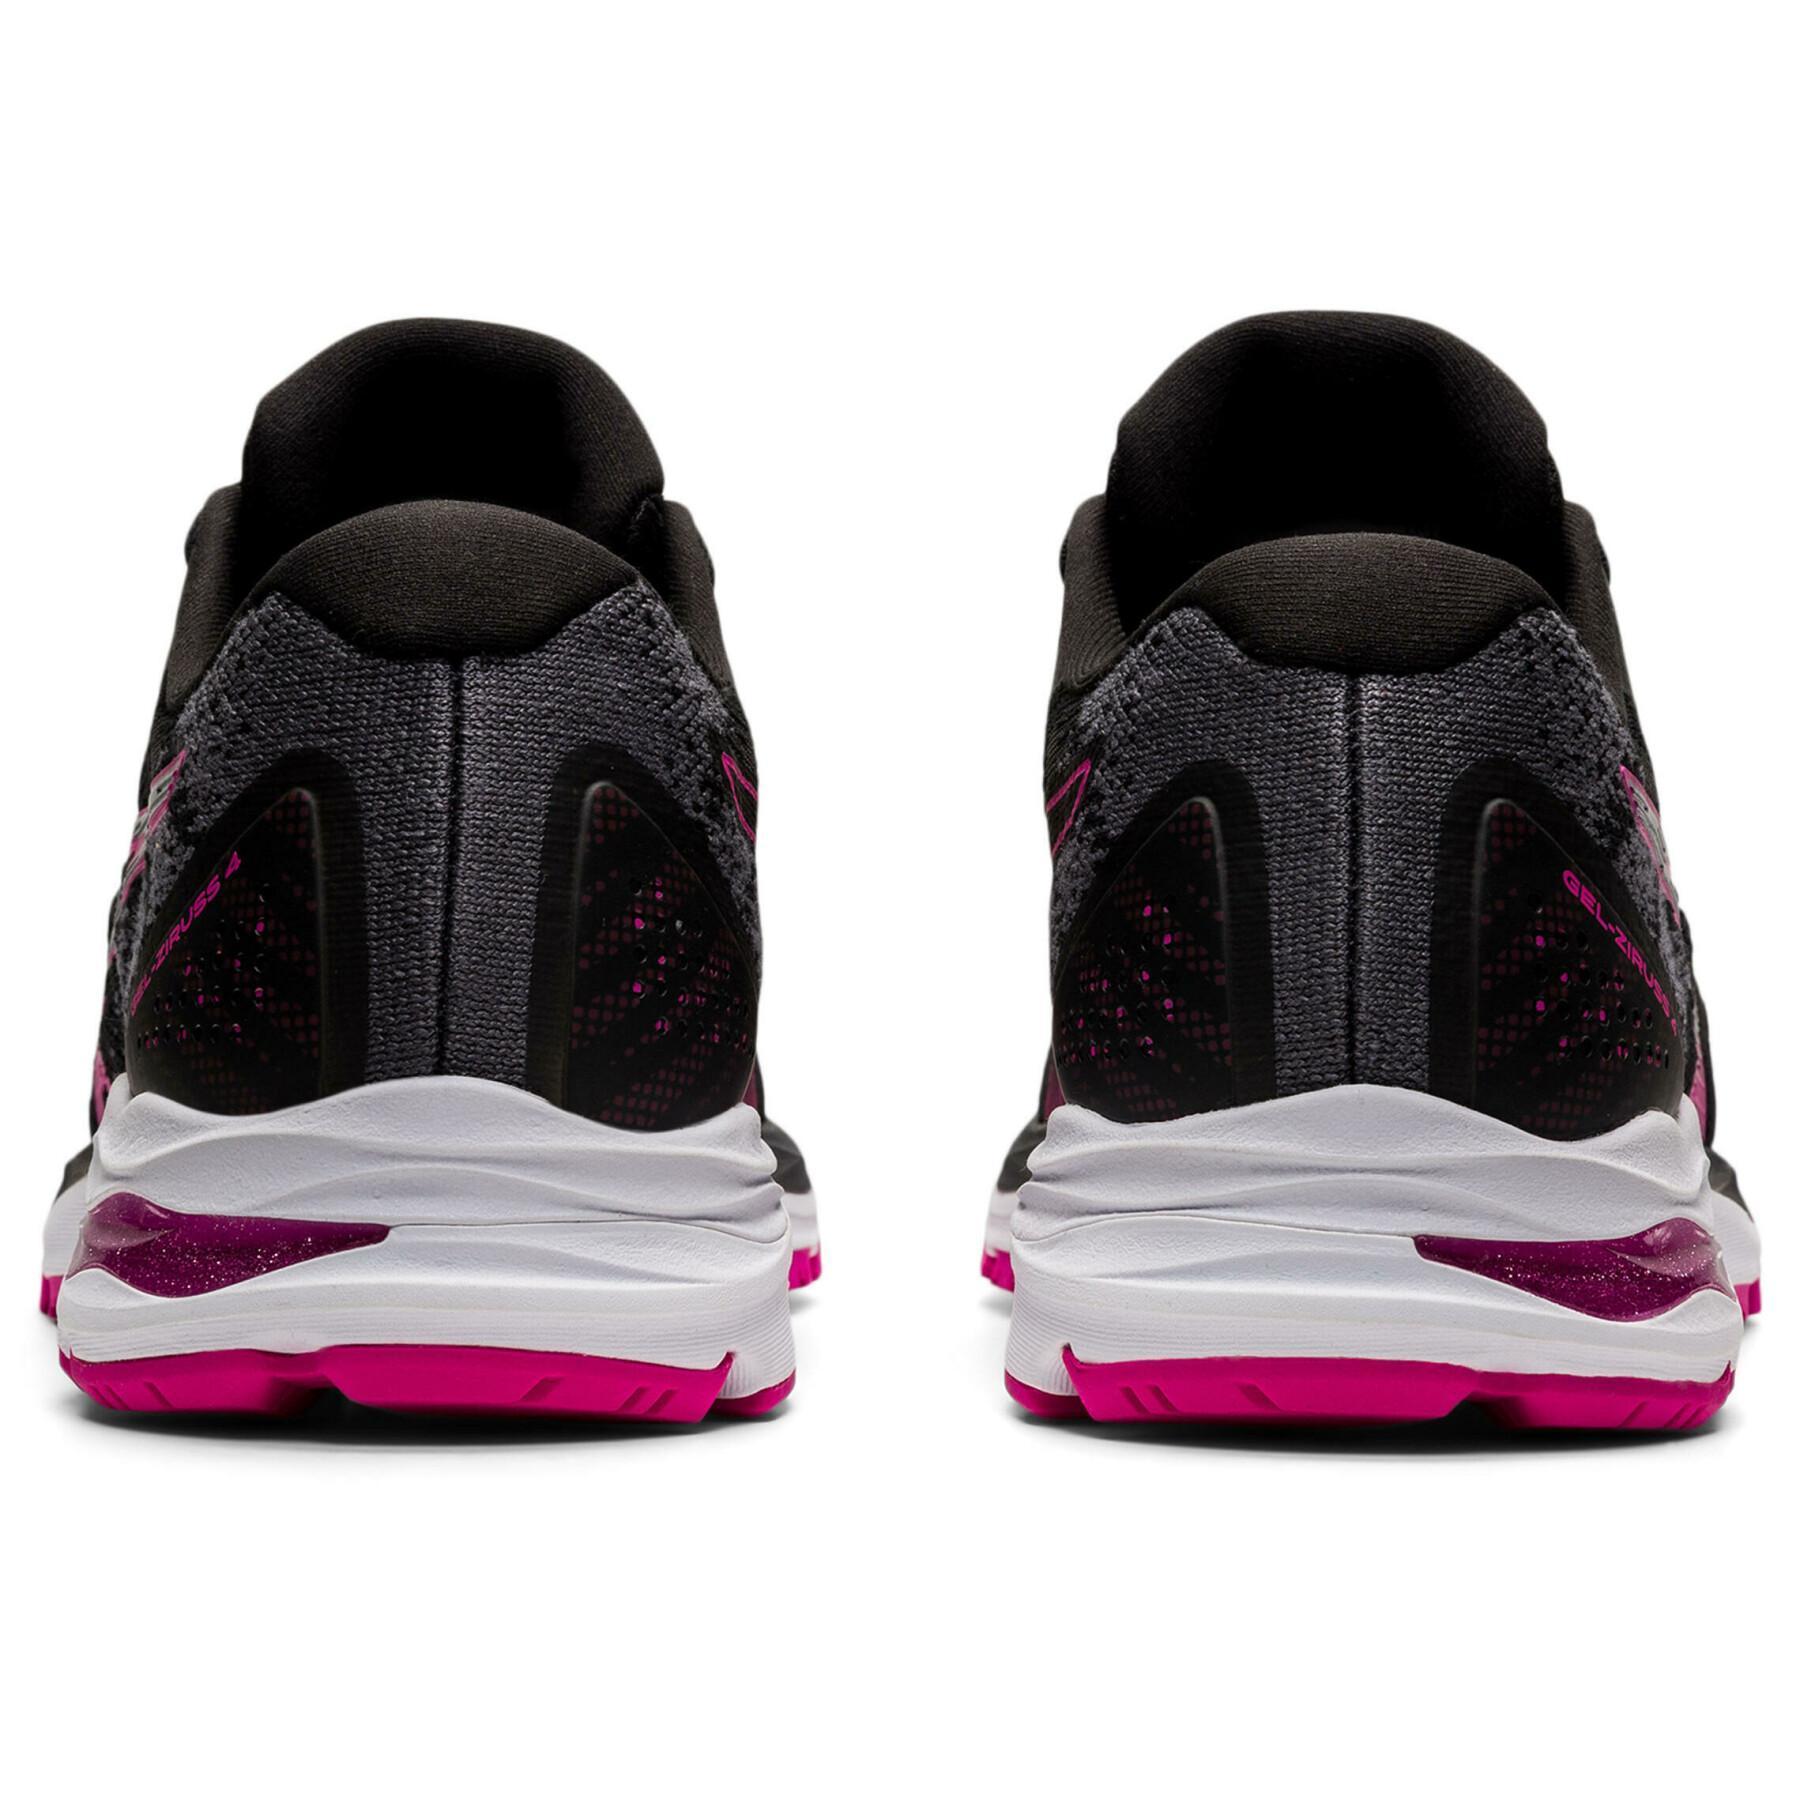 Women's running shoes Asics Gel-Ziruss 4